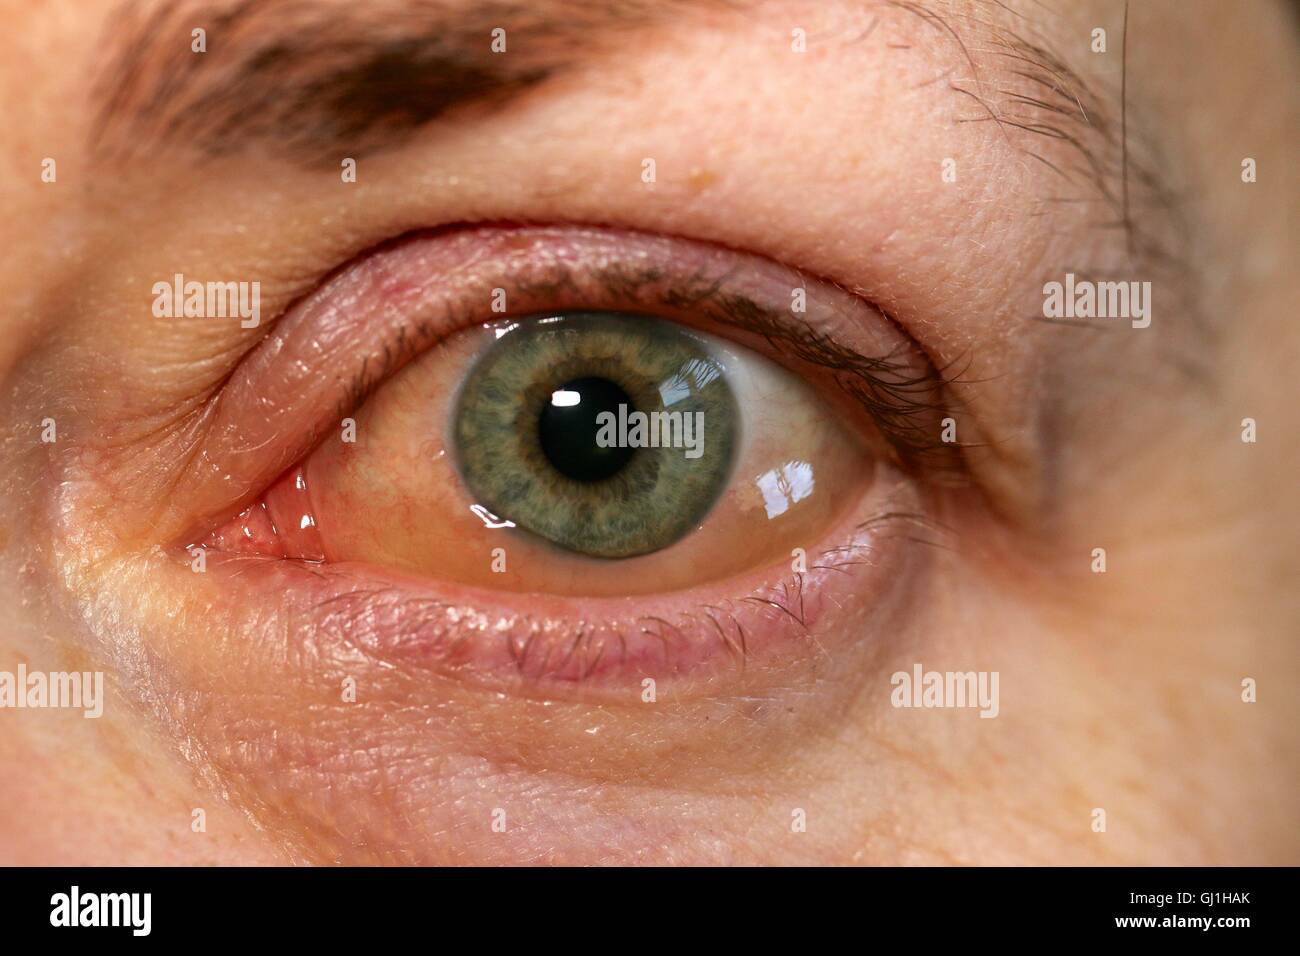 El ojo izquierdo con irritación o reacción alérgica Fotografía de stock -  Alamy